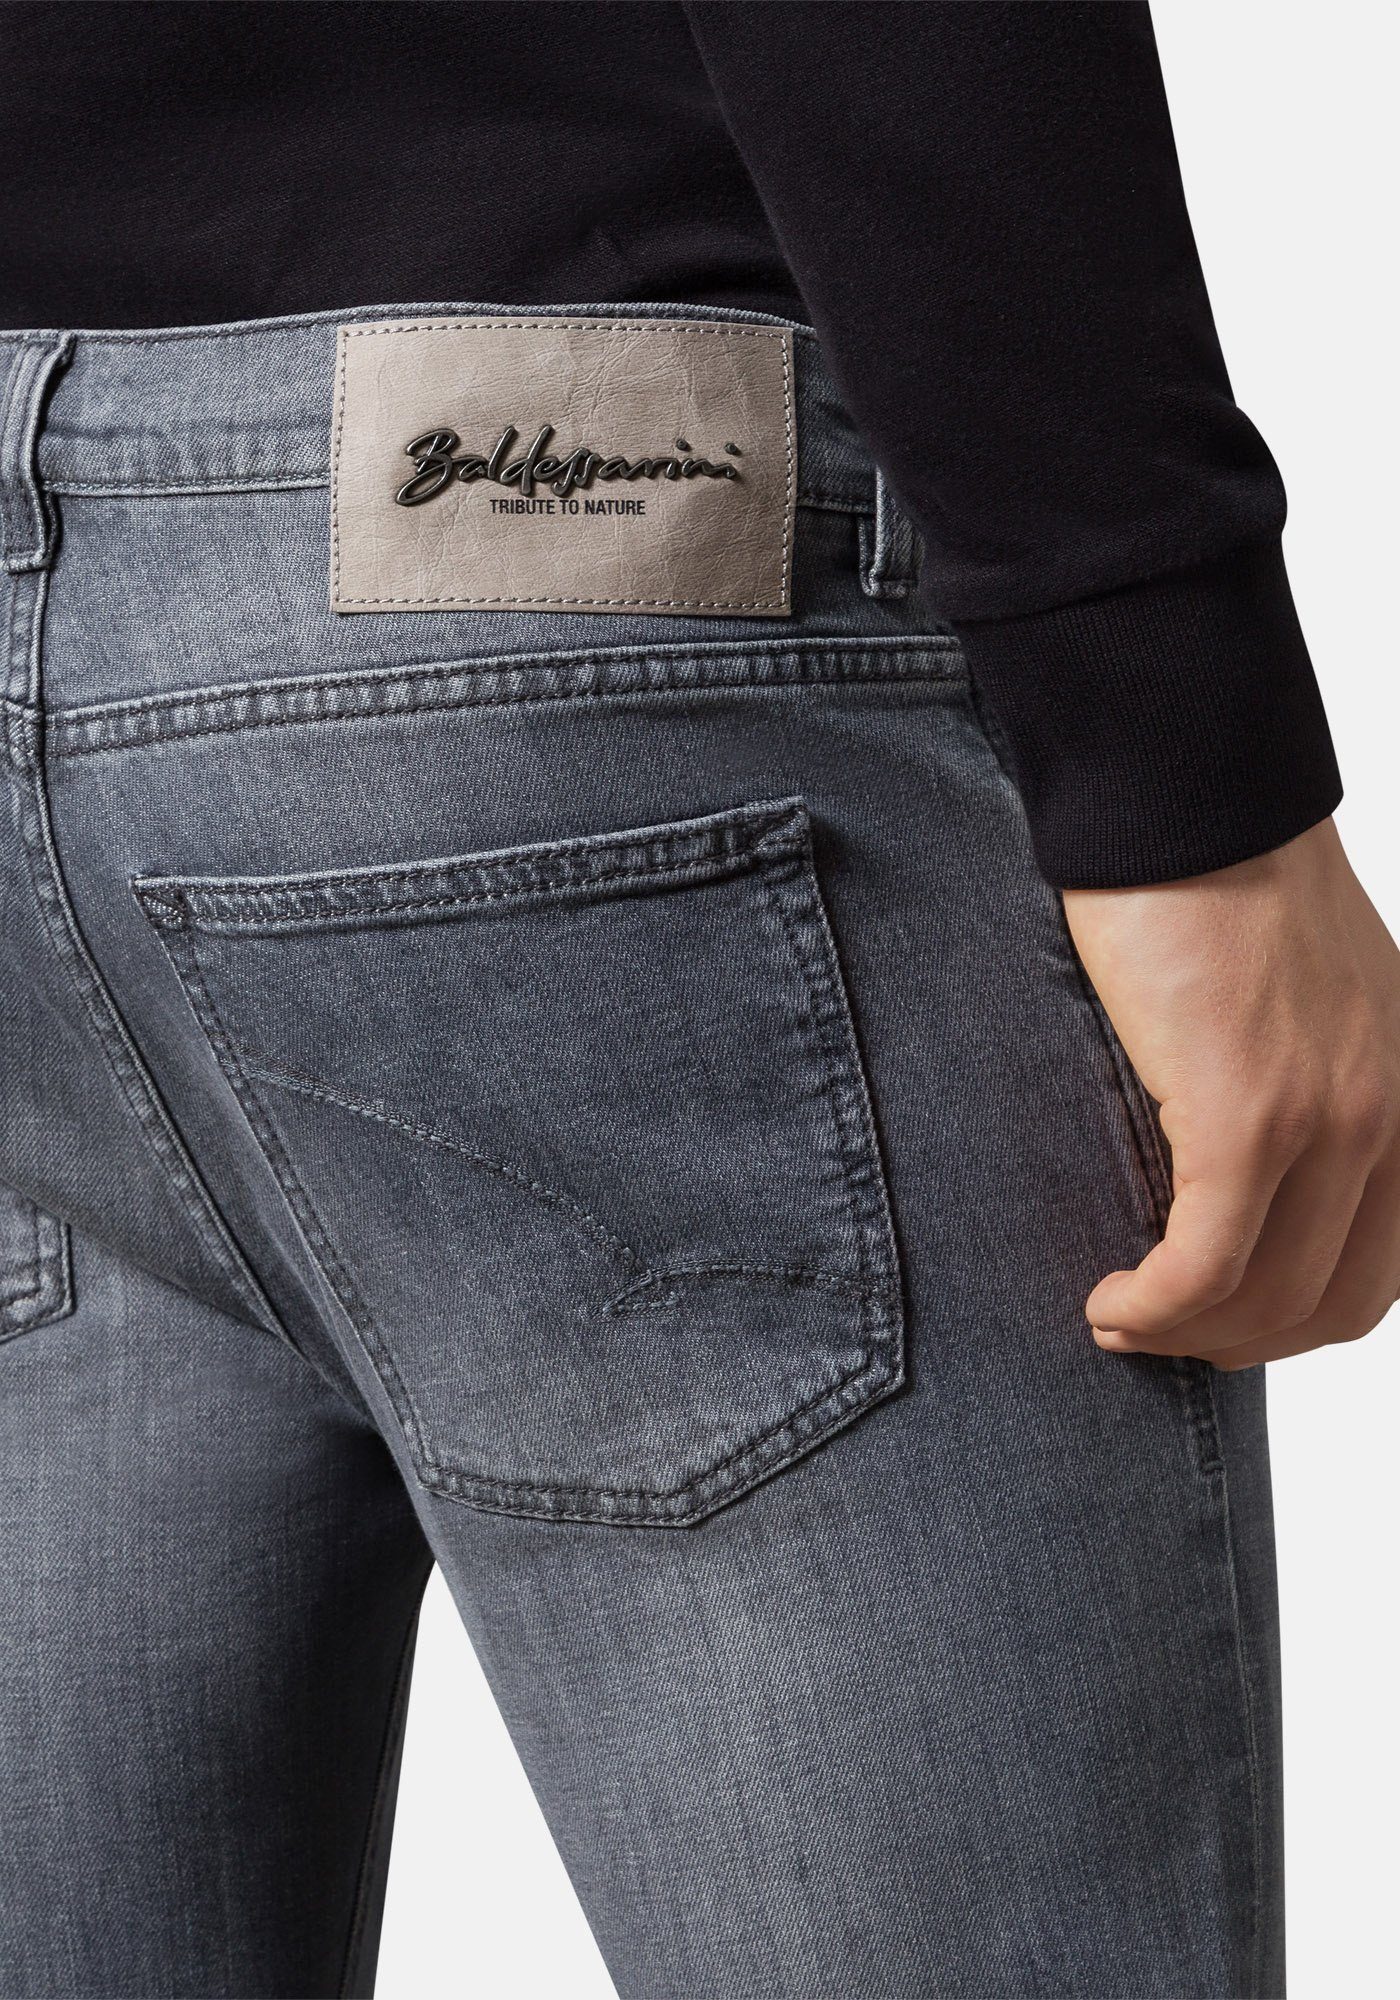 Candiani Tribute Nature Denim John BALDESSARINI To 5-Pocket-Jeans